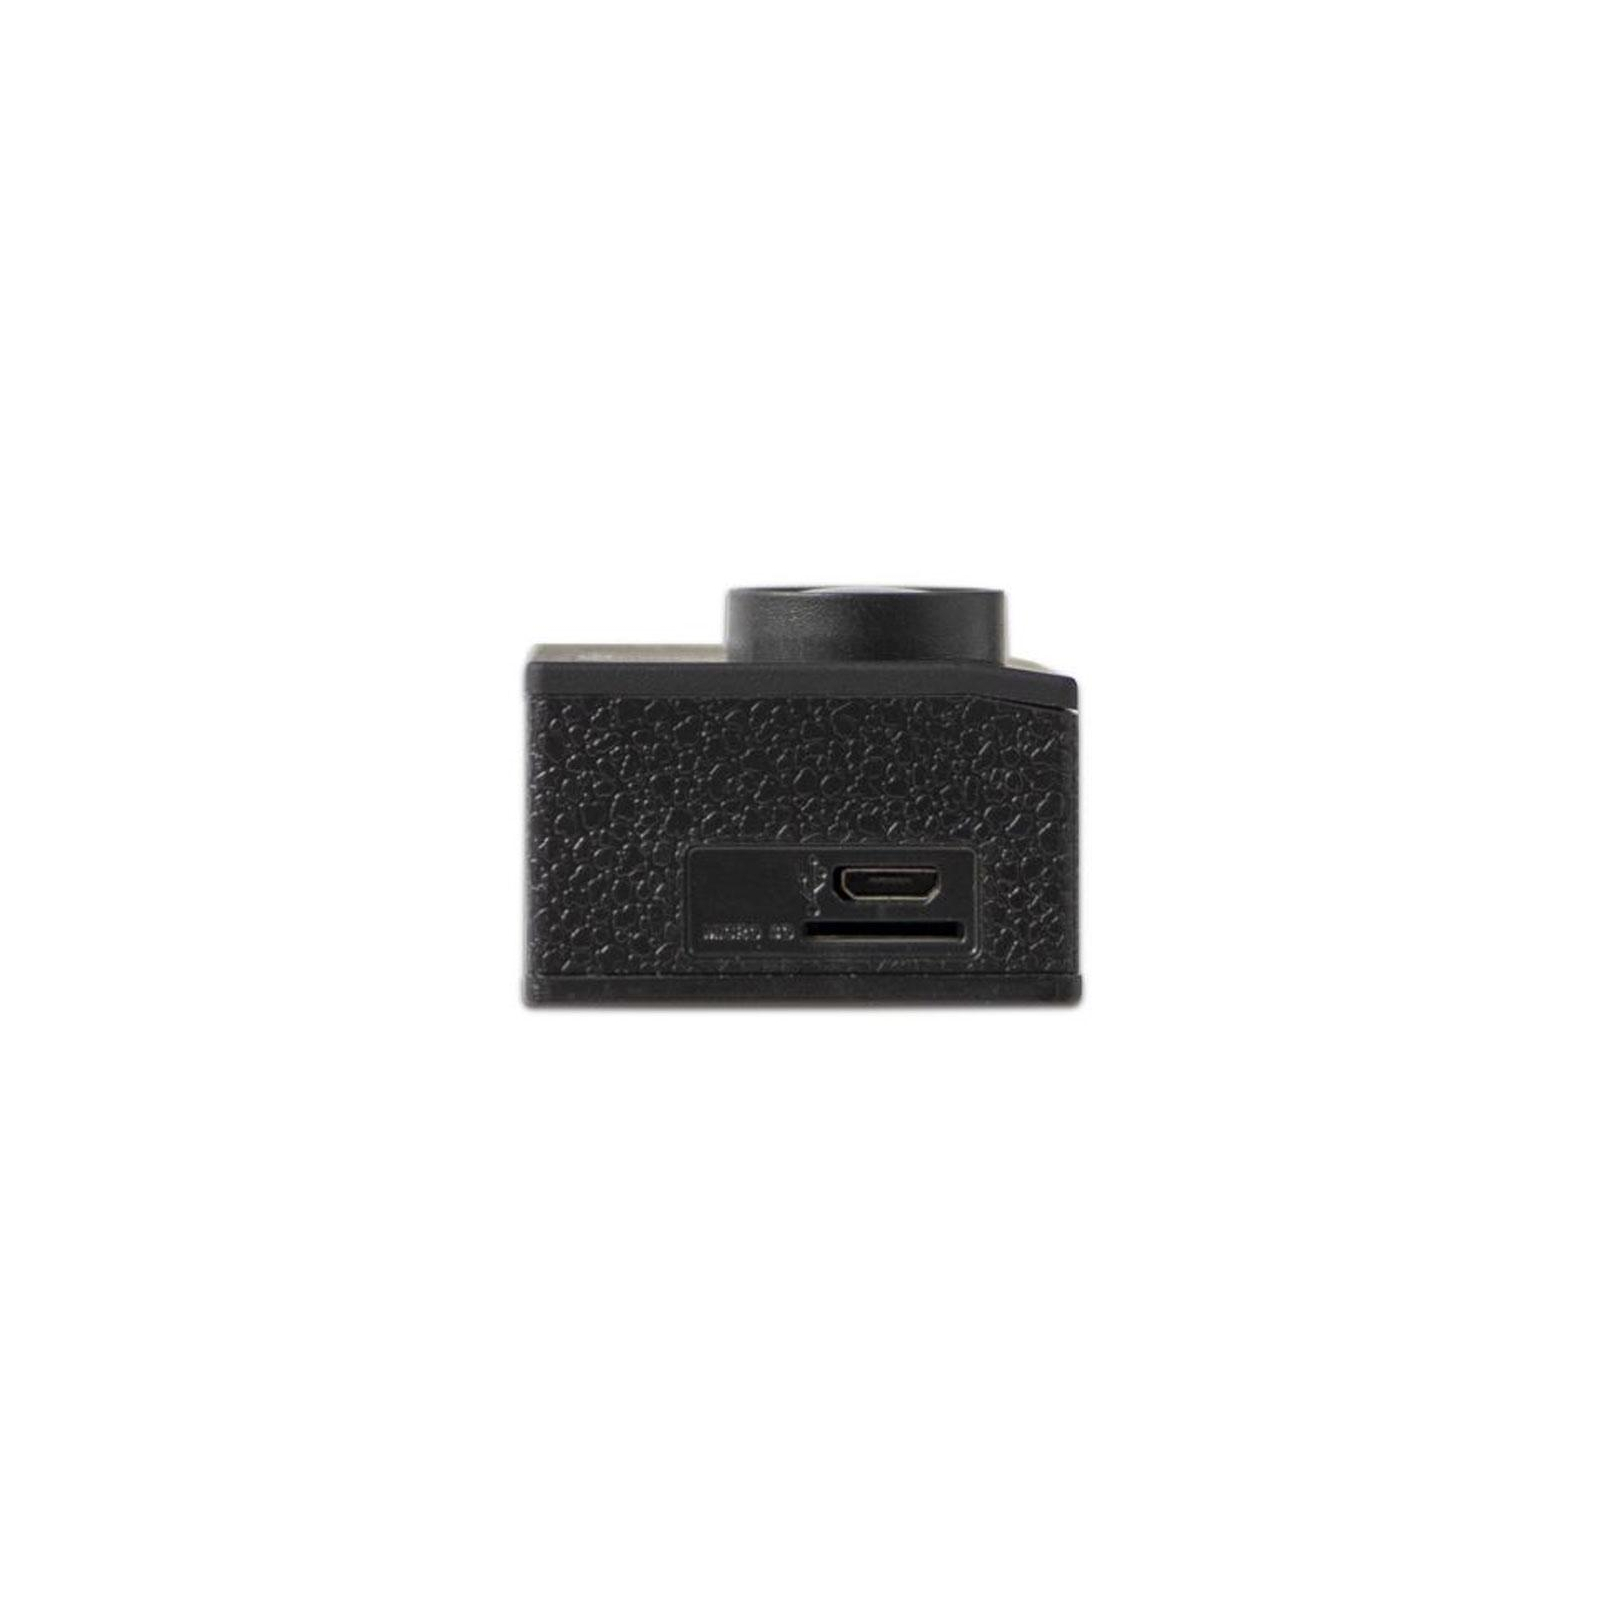 Экшн-камера Sigma Mobile X-sport C11 black (4827798324110) изображение 7